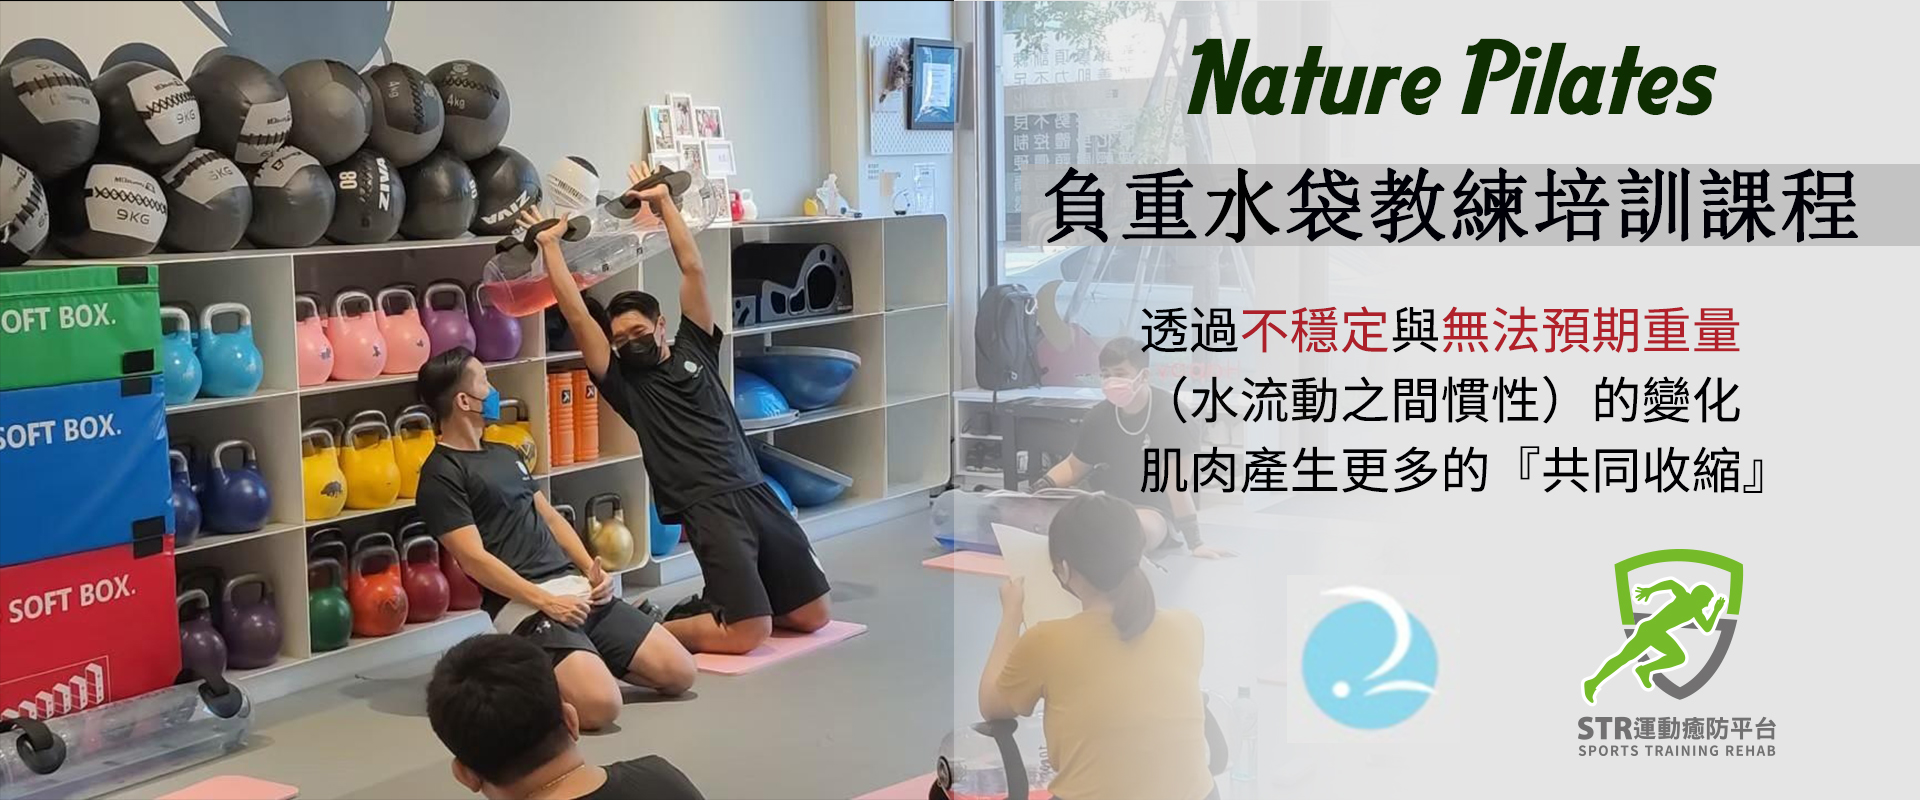 【2022】【Nature Pilates負重水袋教練培訓課程】6/19(台中)